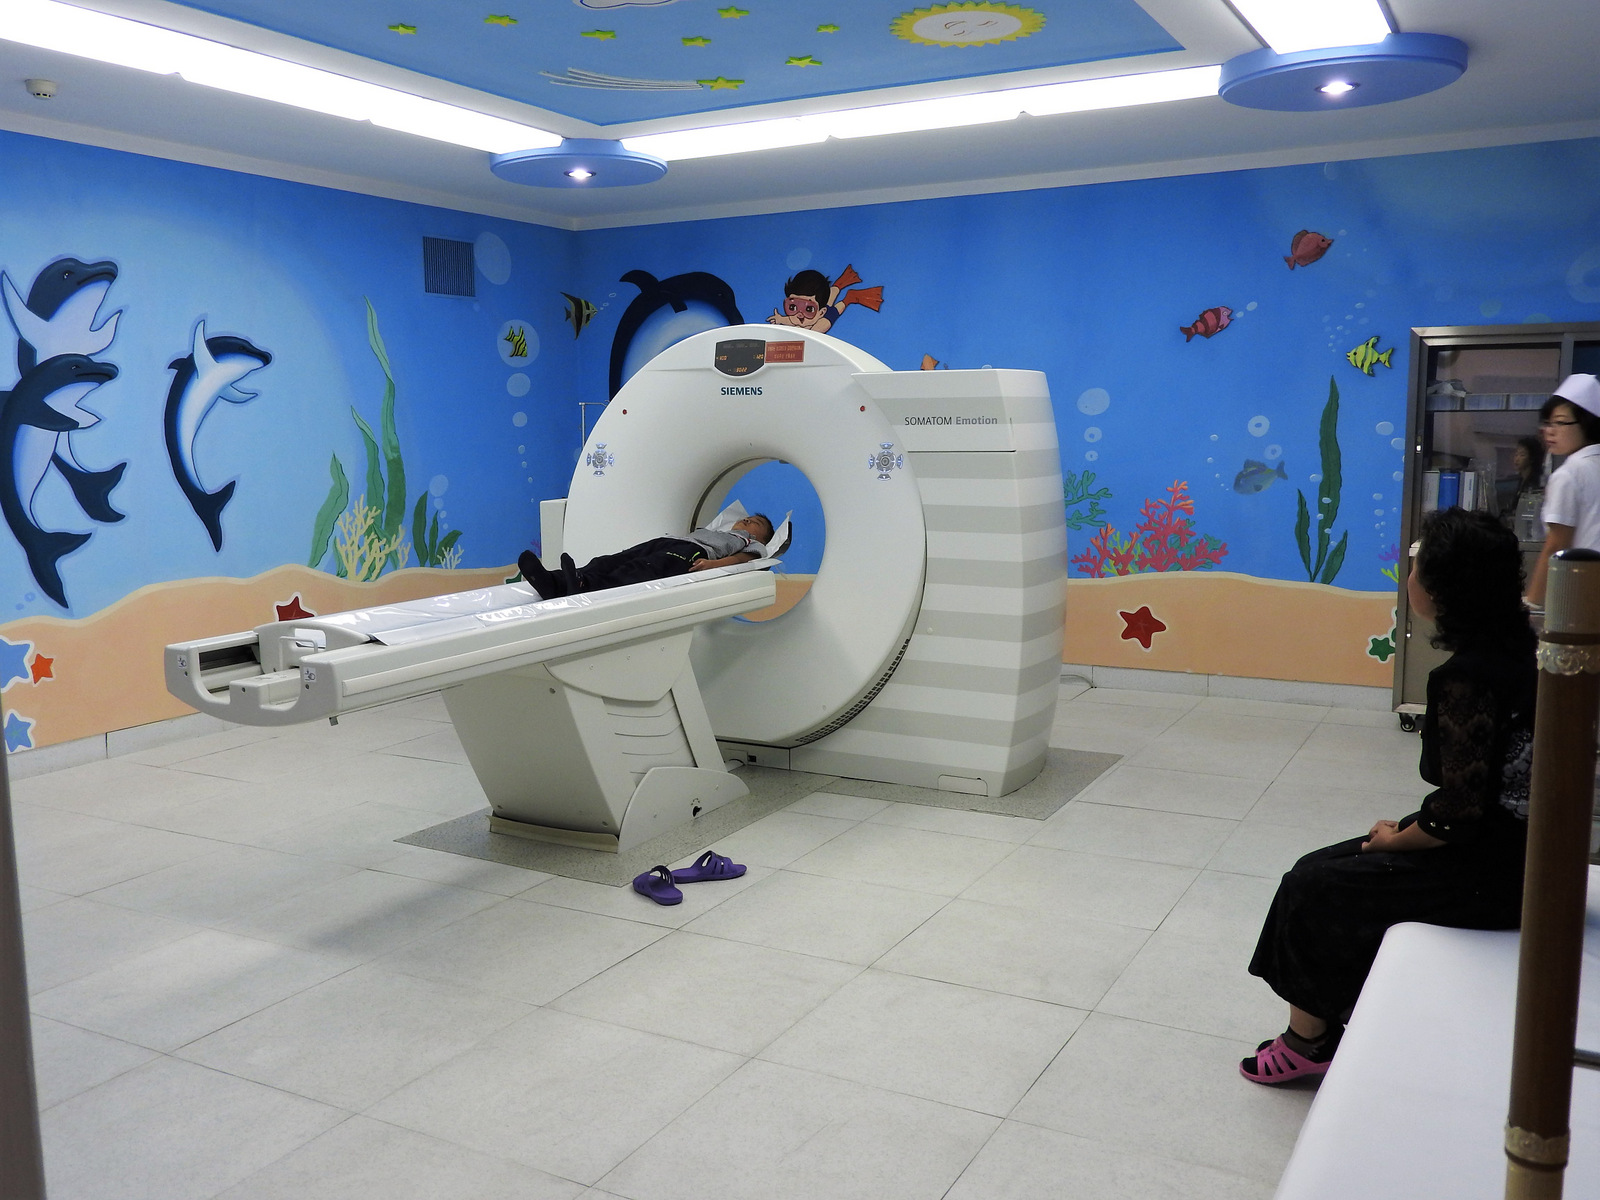 El Okryu Children's Hospital es una instalación de seis pisos y 300 camas frente al hospital de maternidad de Pyongyang. Las sanciones de EE. UU. En la RPDC impiden la entrada adicional de máquinas como la tomografía computarizada en la imagen. Aunque desafiadamente orgullosa del sistema de atención médica, la Dra. Kim Un-Song habló de su ira como madre: "Esto es inhumano y en contra de los derechos humanos. La medicina que necesitan los niños está bajo sanciones ".